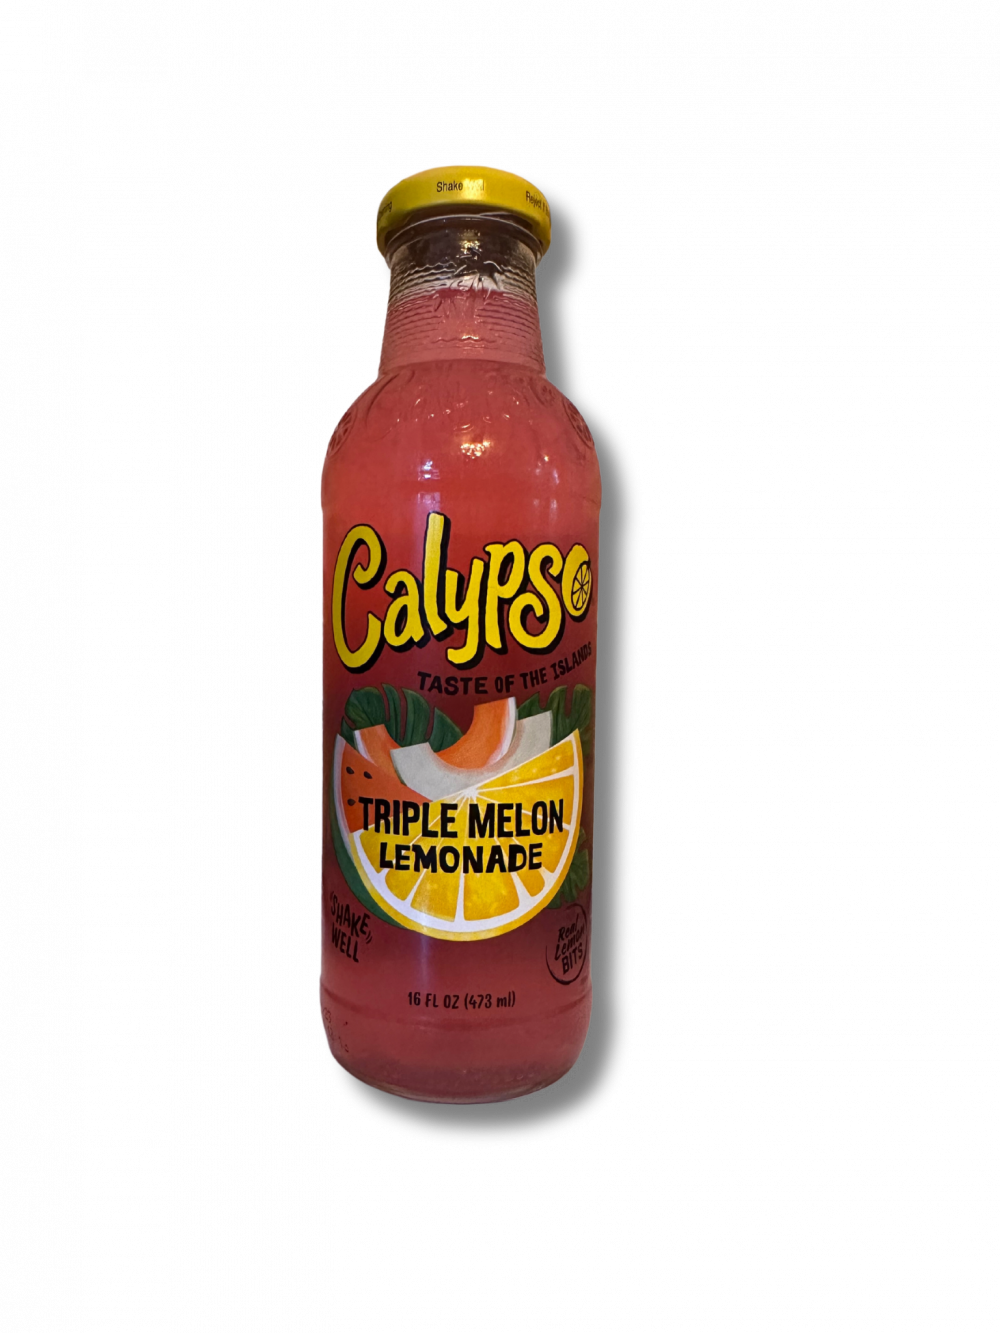 Tauche ein in ein fruchtiges Dreifachvergnügen mit der Calypso Triple Melon Lemonade aus den USA! Dieses erfrischende Getränk vereint die Aromen von Wassermelone, Honigmelone und Cantaloupe zu einer wahren Geschmacksexplosion. Jeder Schluck entführt dich in einen sonnendurchfluteten Melonenhain und erfrischt deine Sinne. Die Calypso Triple Melon Lemonade ist der perfekte Begleiter für heiße Tage und sorgt für ein intensives, fruchtiges Genusserlebnis. Bestelle noch heute und genieße die erfrischende Vielfalt dieser köstlichen Limonade! […] - Breddas Hemp & Sweets Company Wuppertal